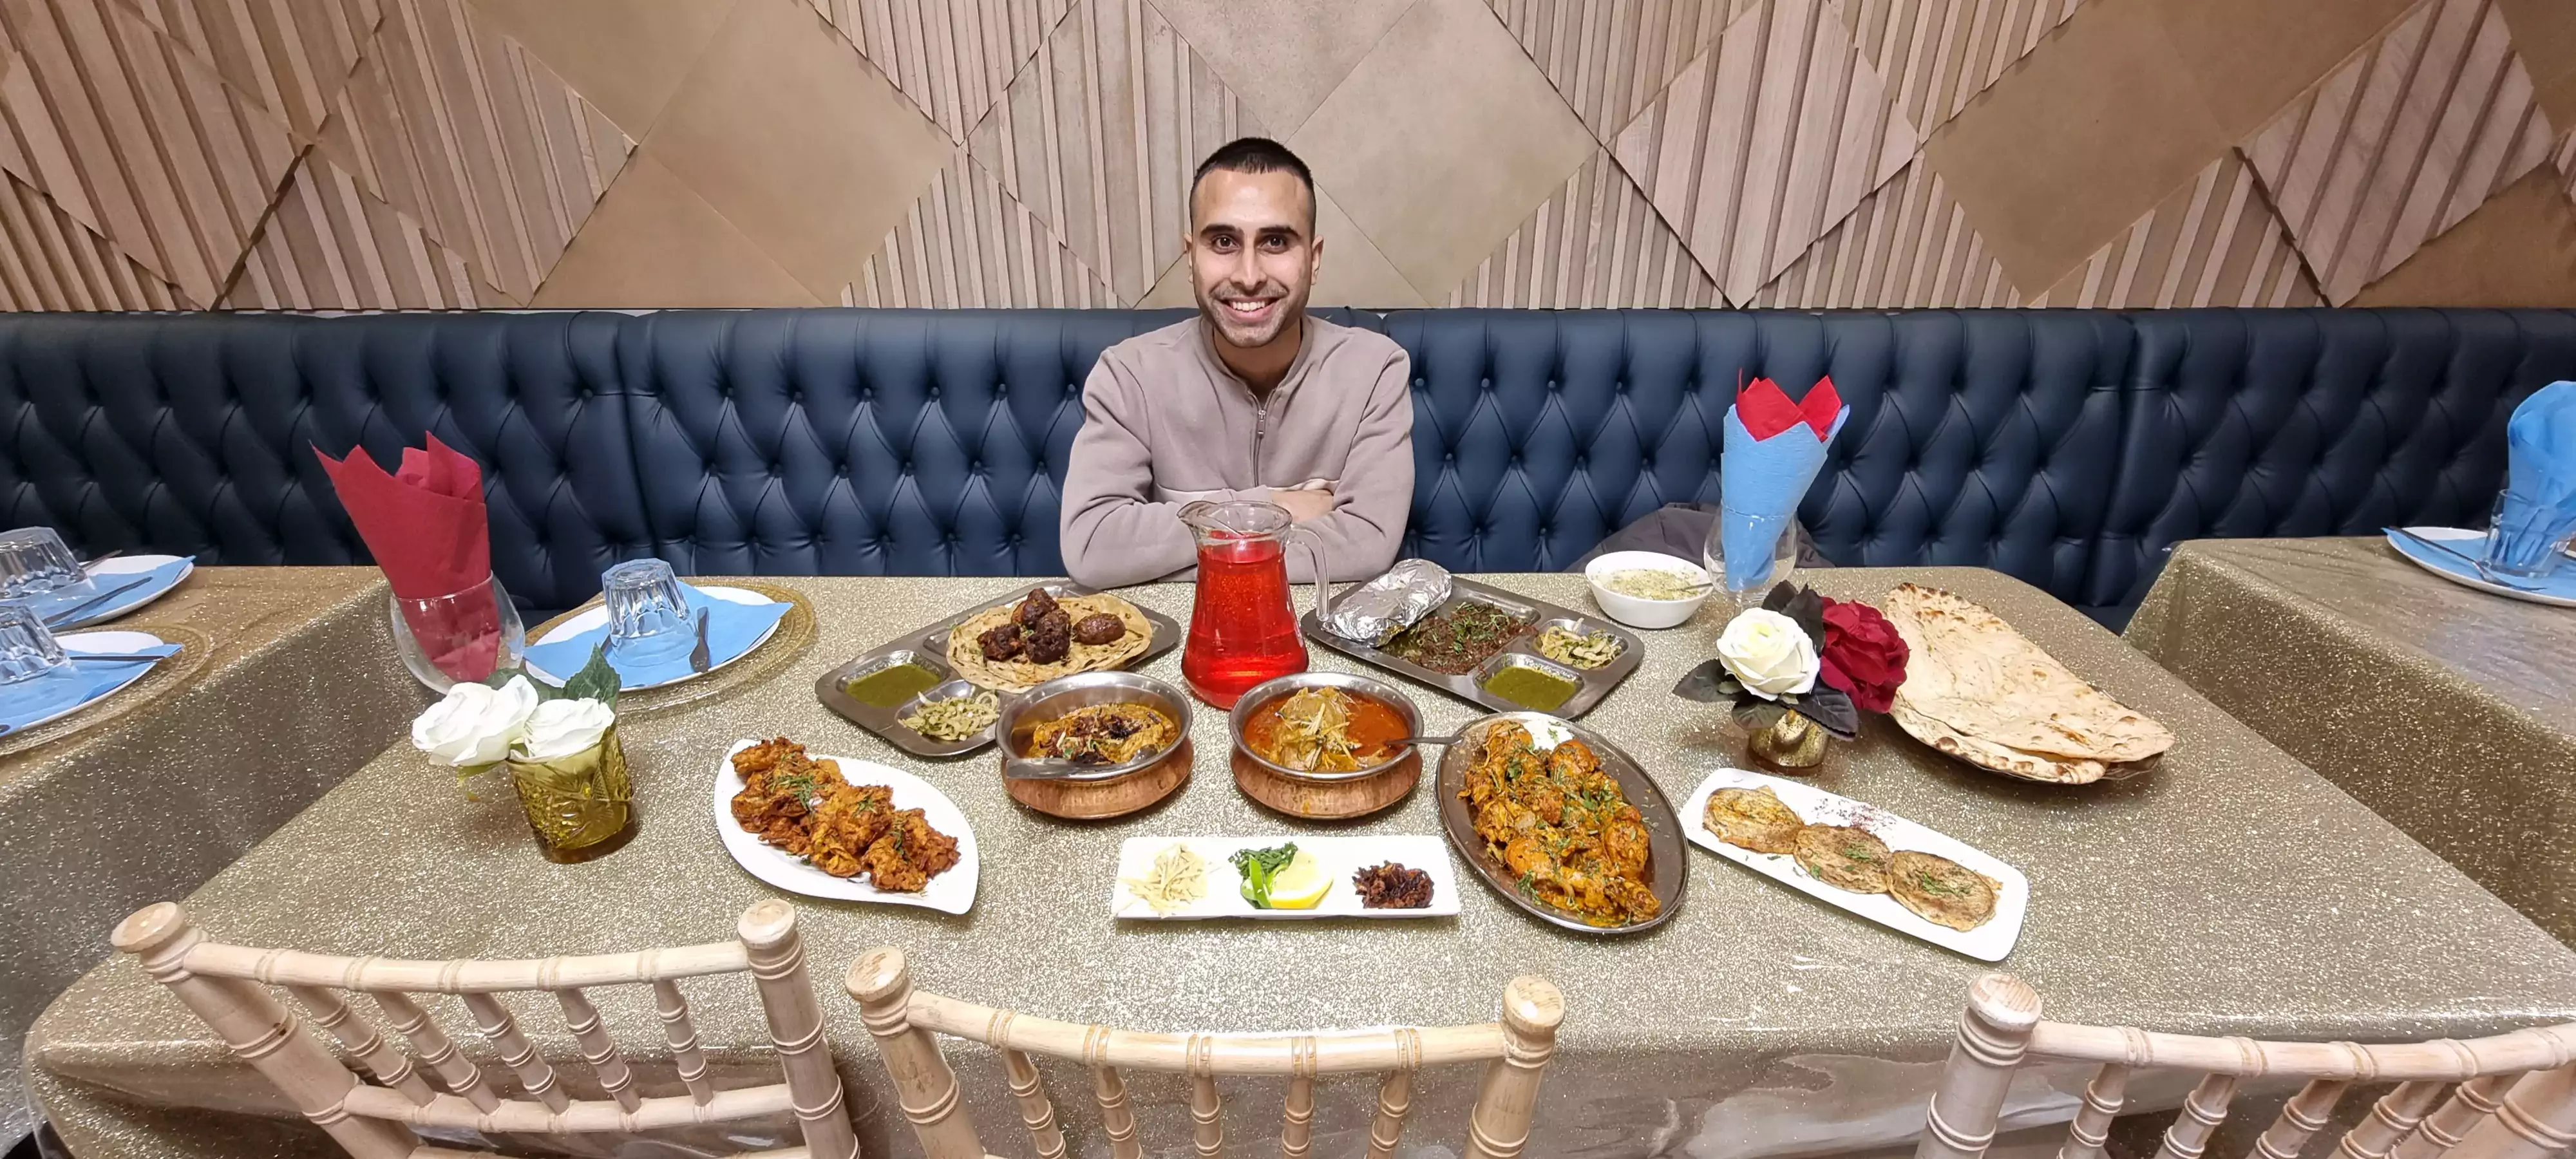 Adil Musa enjoying Iftar at Dil Pasand